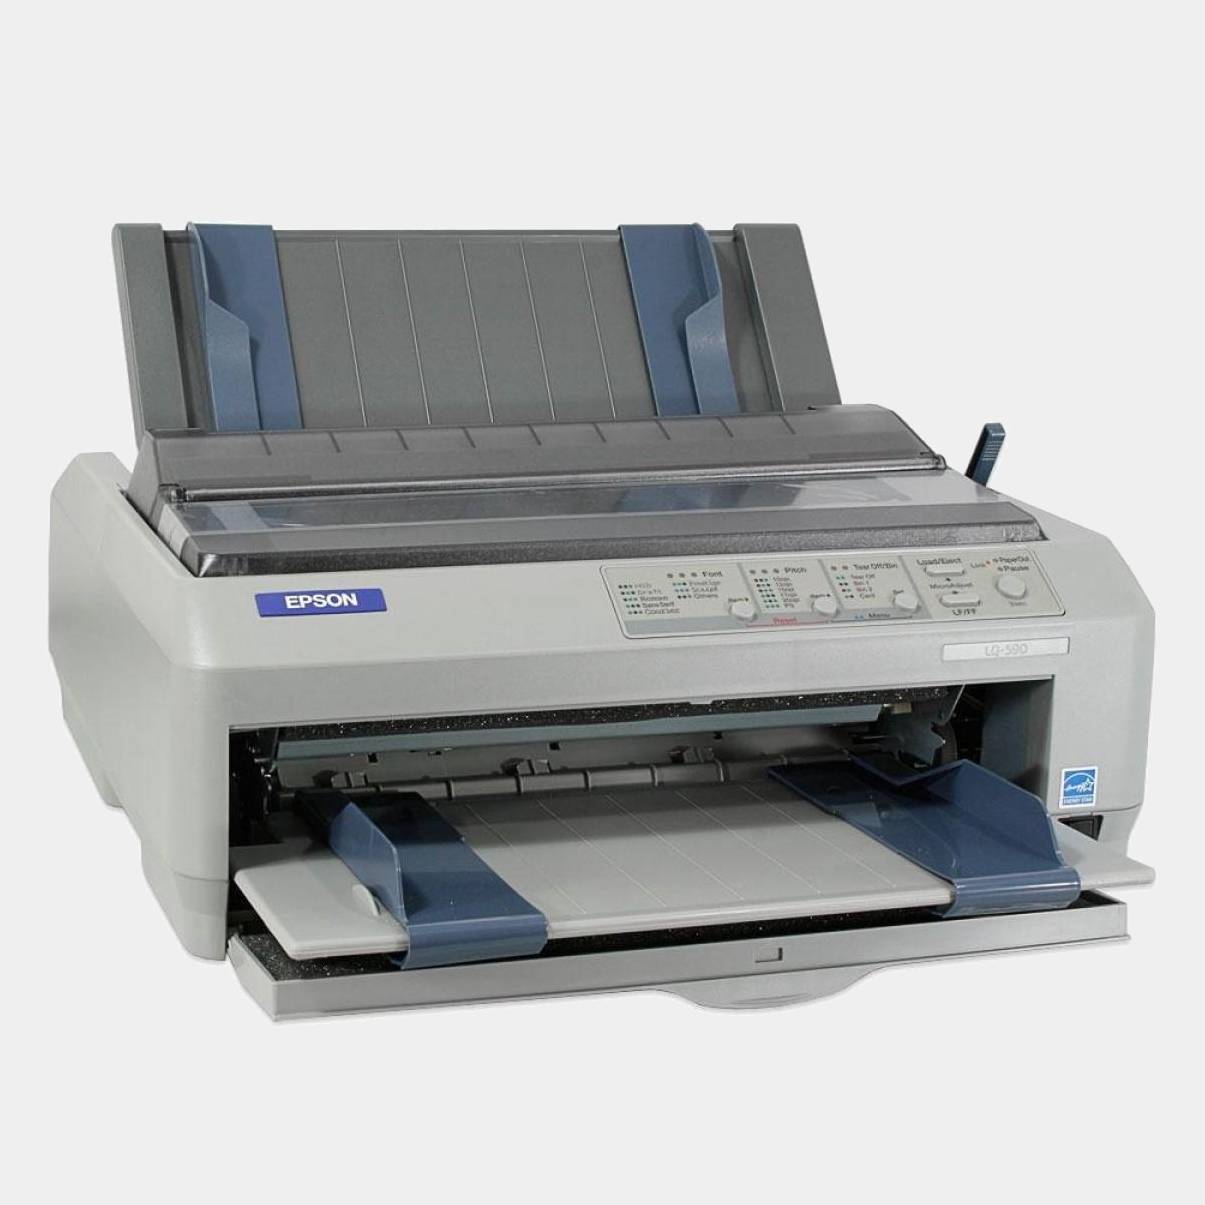 Impresora Epson Matricial Lq590 Usb/ Paralelo